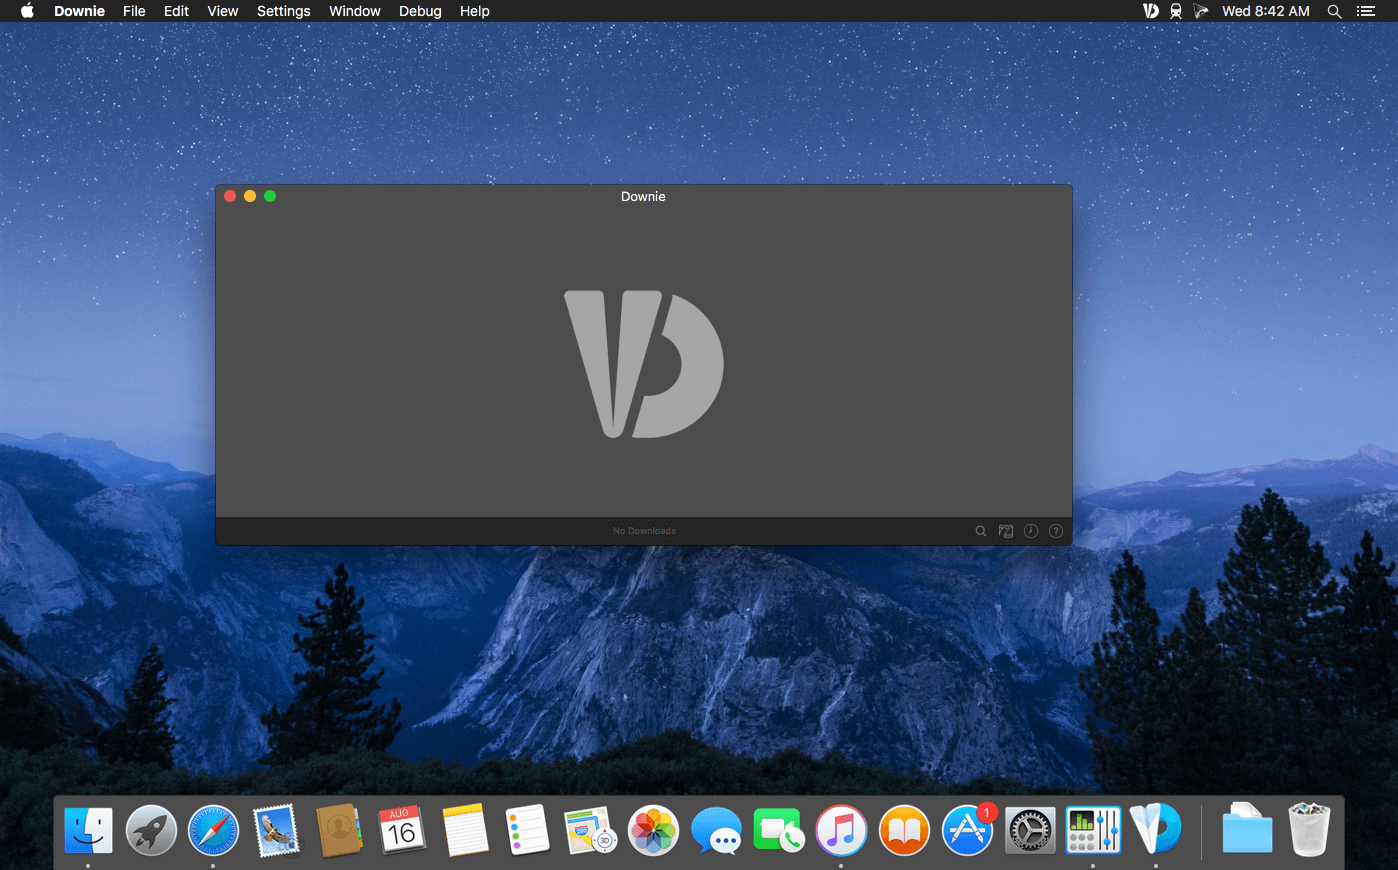 for mac instal Downie 4